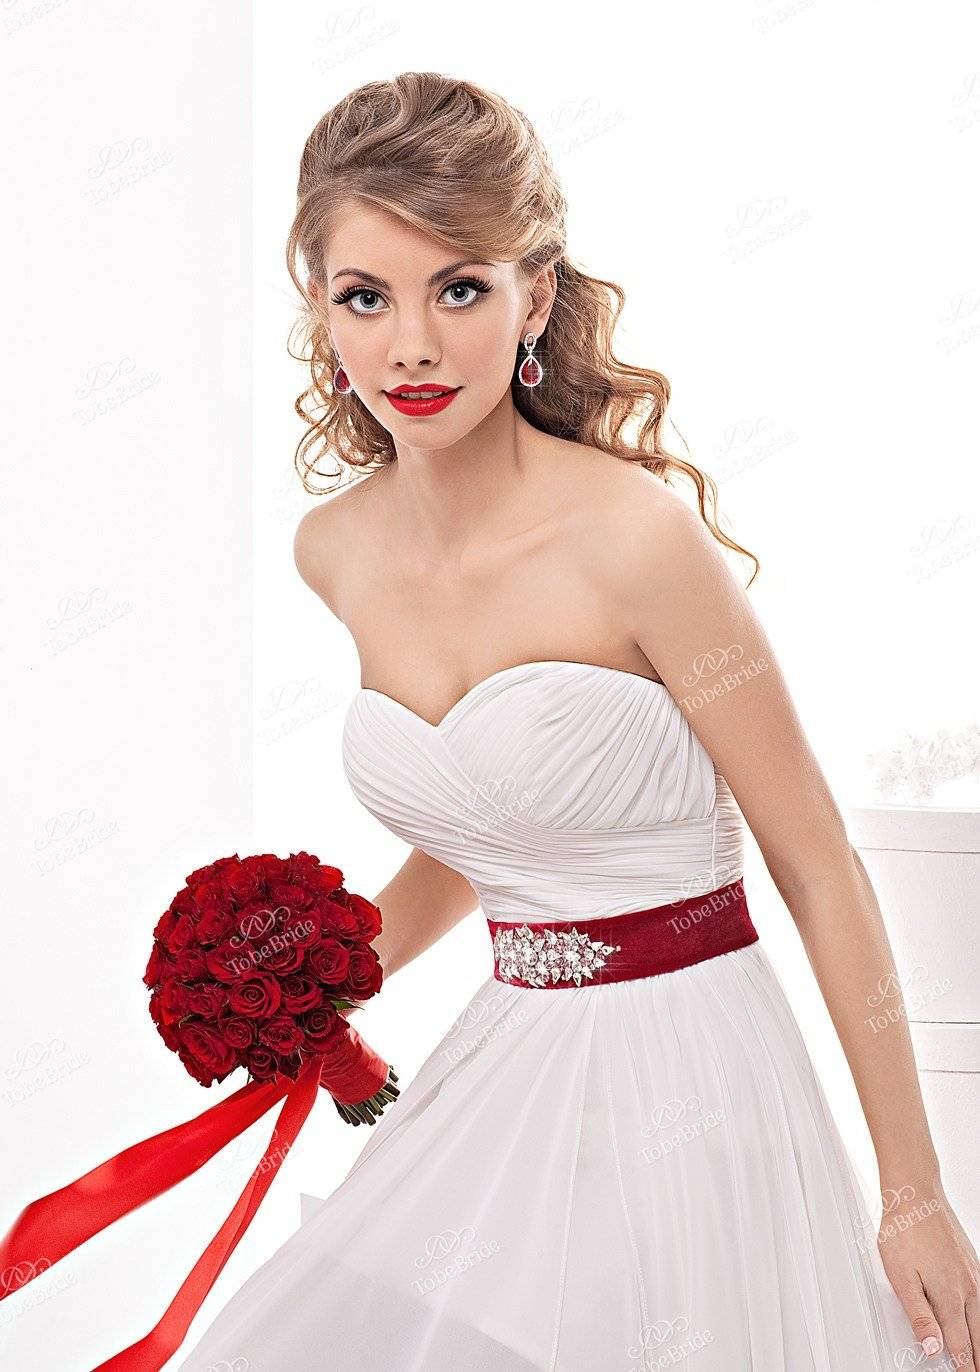 Платье с красным поясом. Свадебное платье с красным поясом. Свадебное платье белое с красным. Белое платье с красным поясом. Платье невесты с красным поясом.